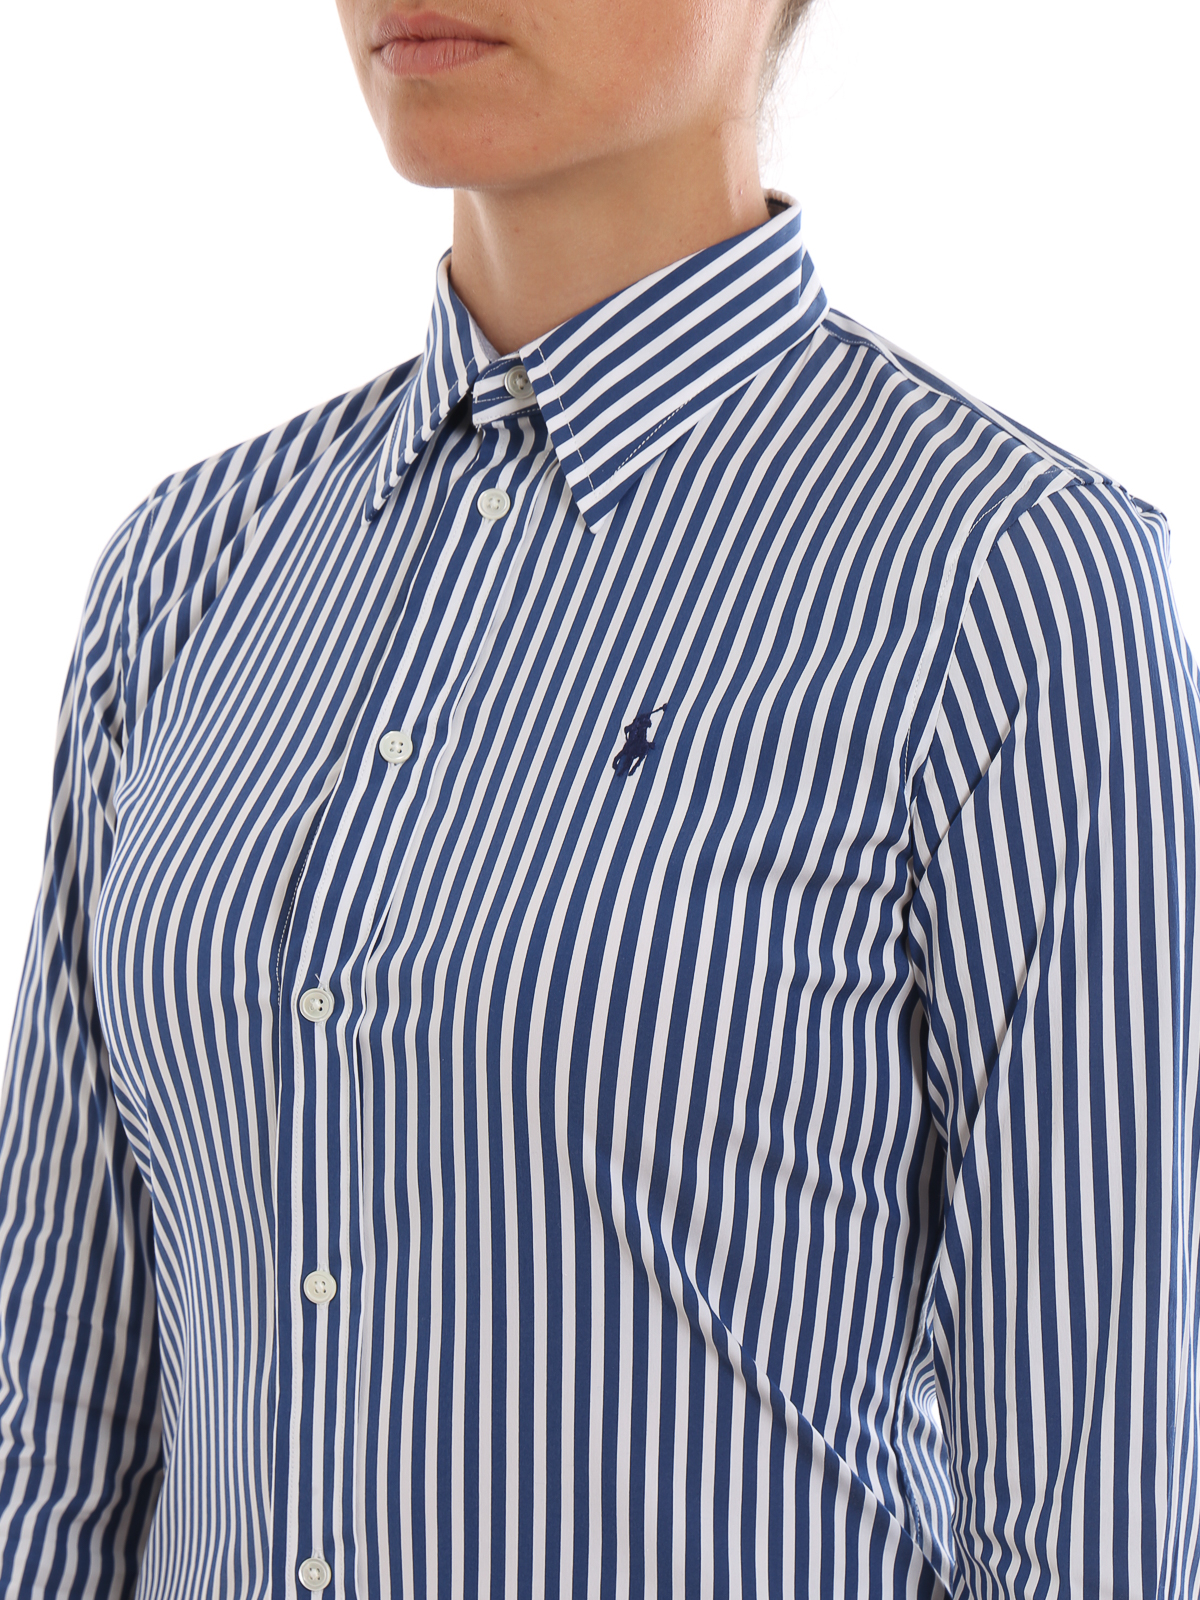 Shirts Polo Ralph Lauren - Blue striped shirt -